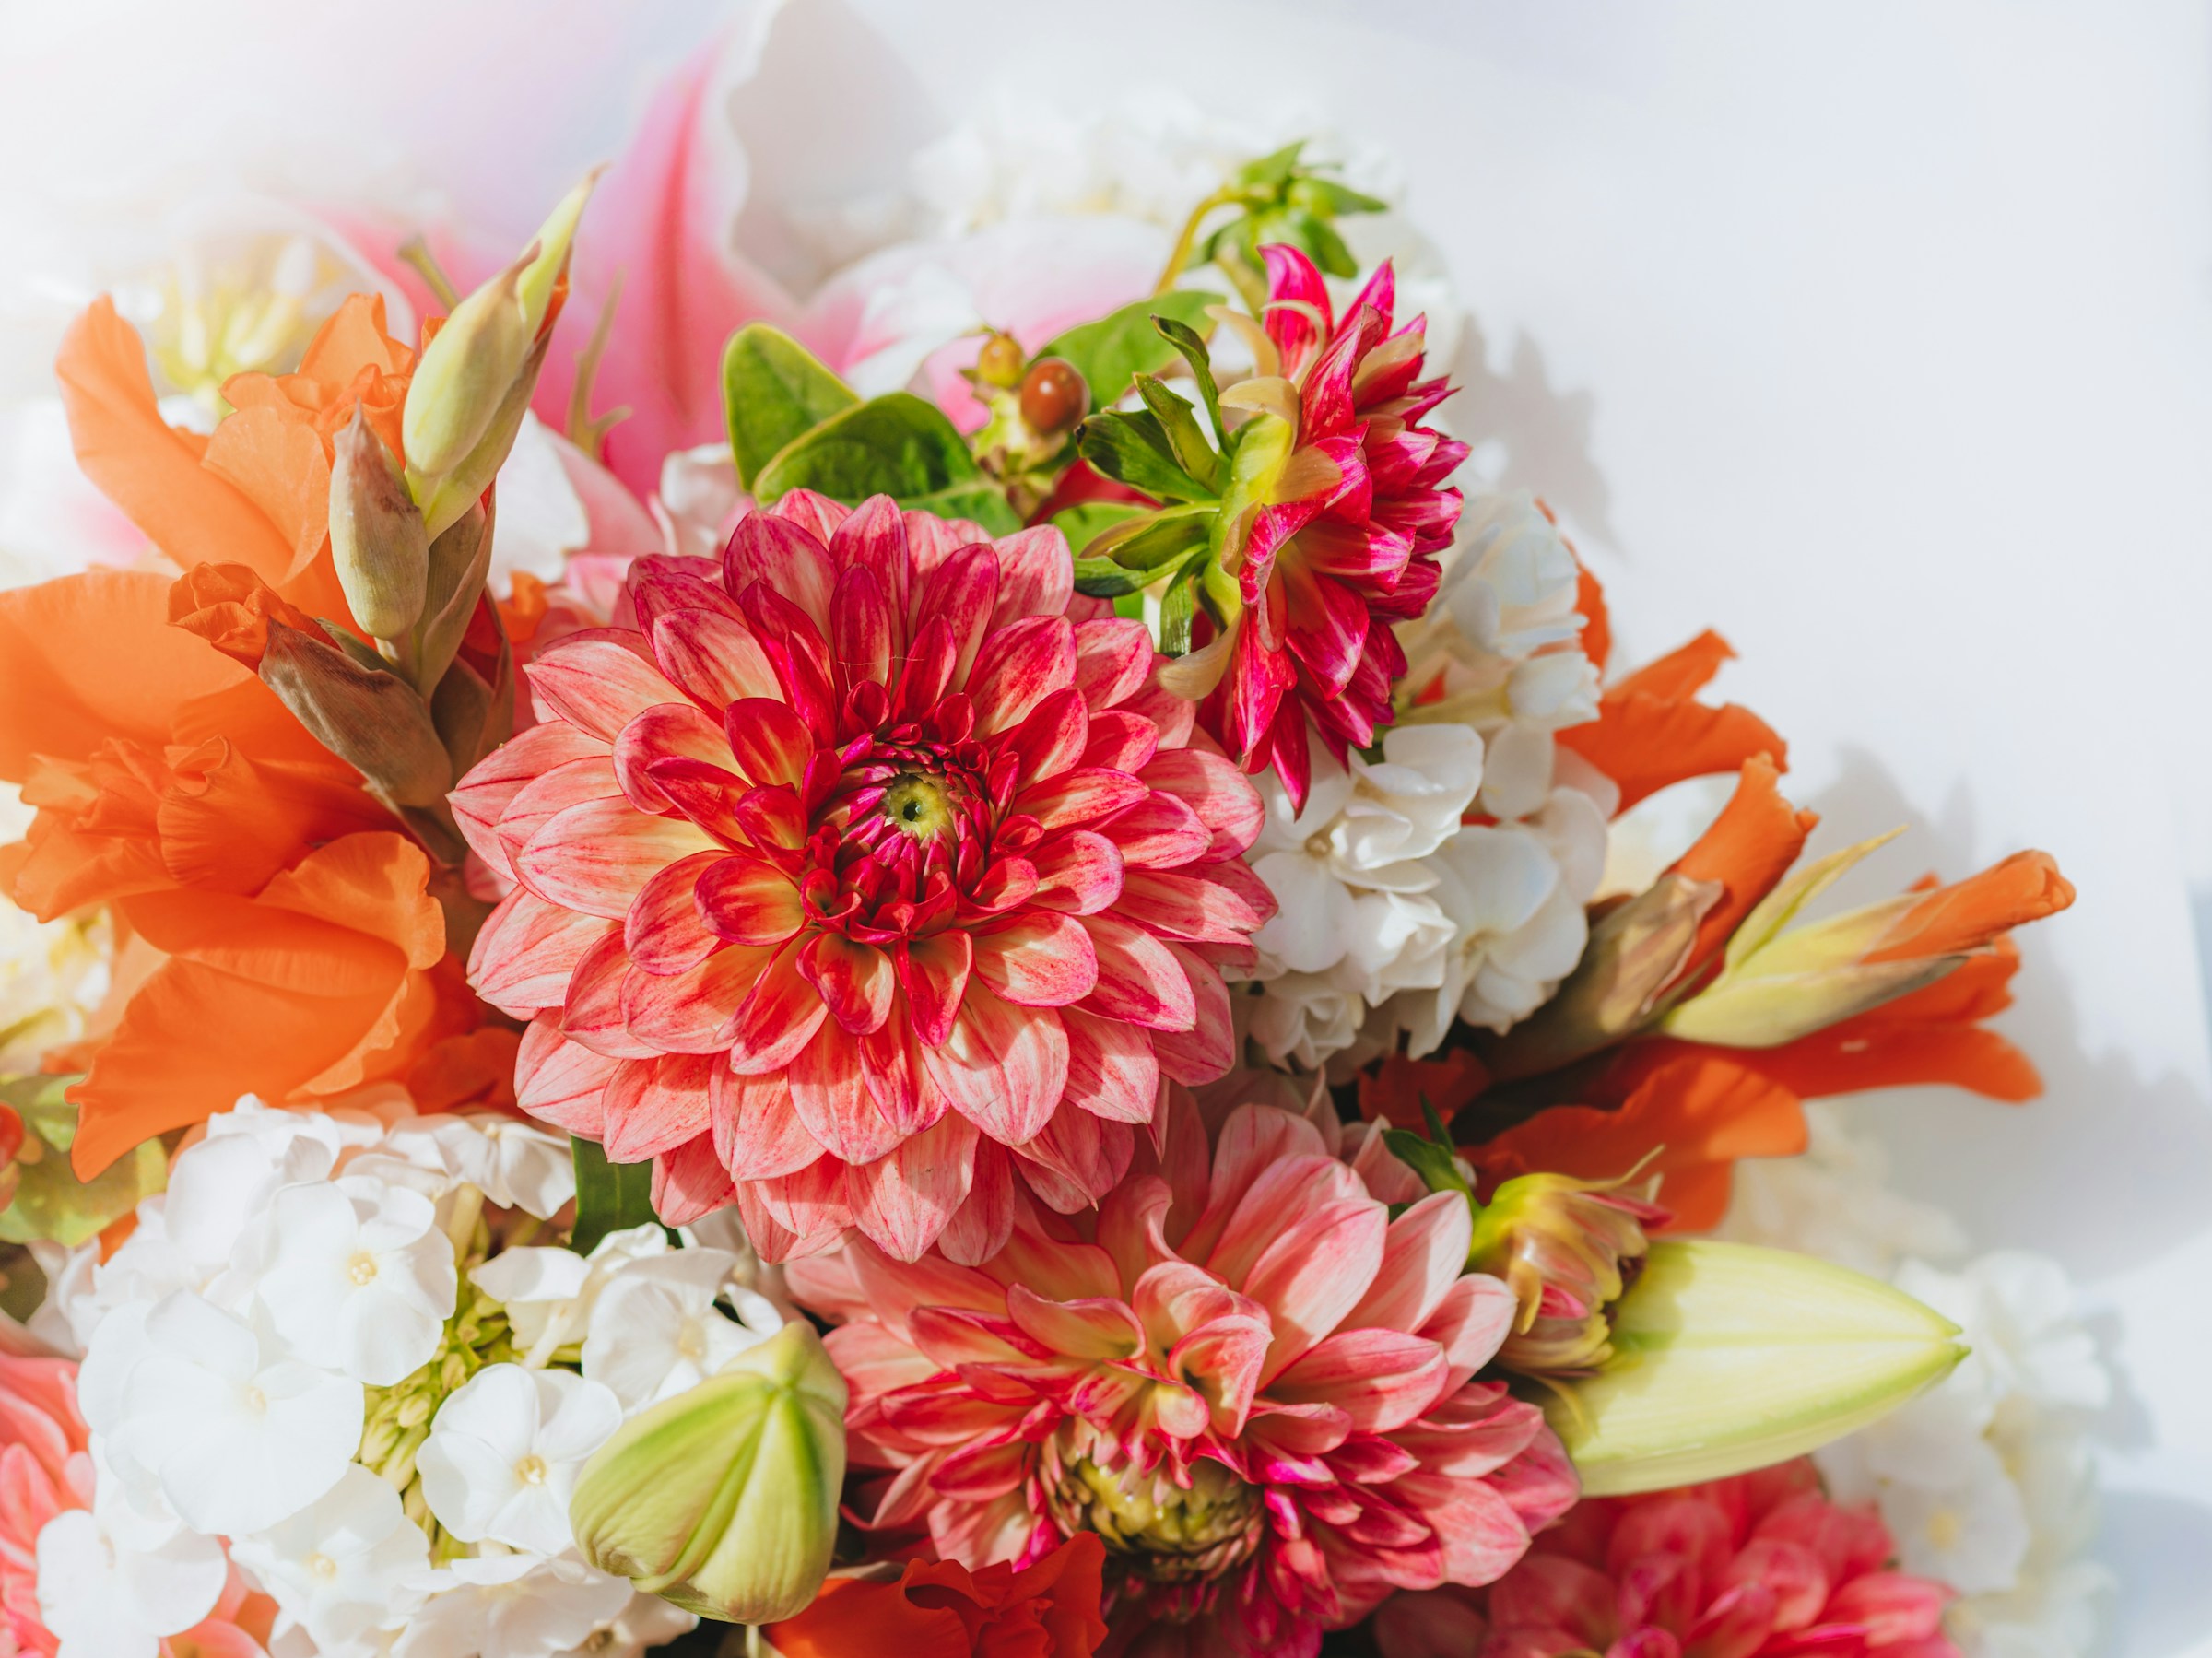 A bouquet of flowers | Source: Unsplash